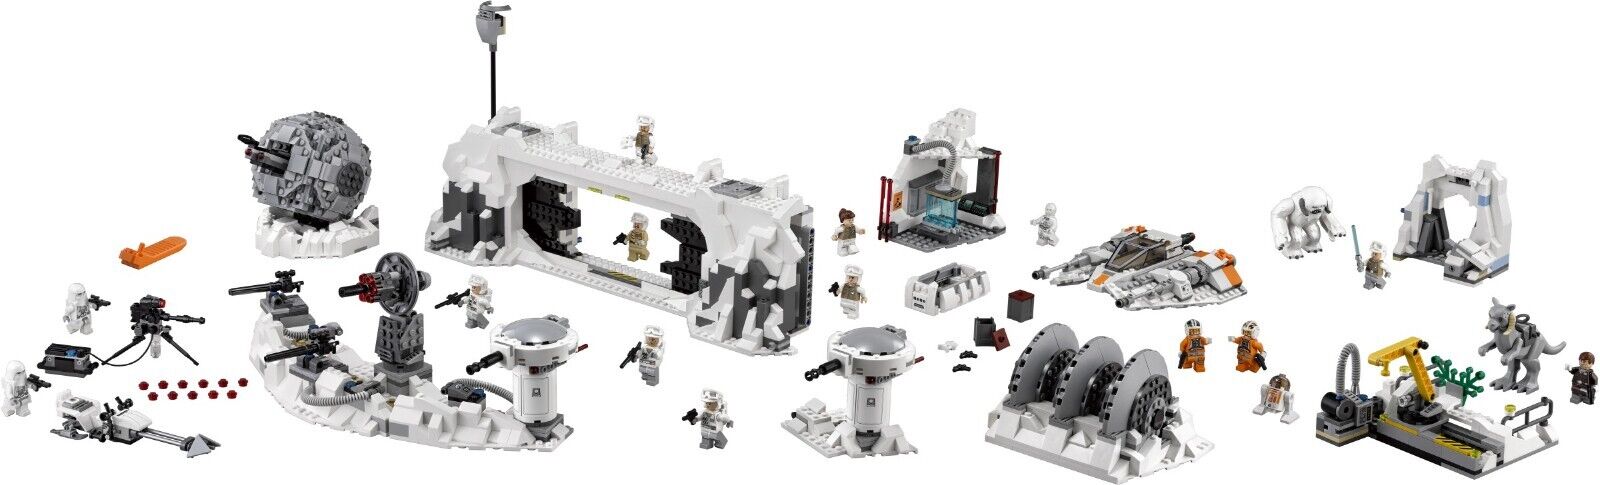 LEGO NIB 75098 Star Wars Assault on Hoth UCS Retired